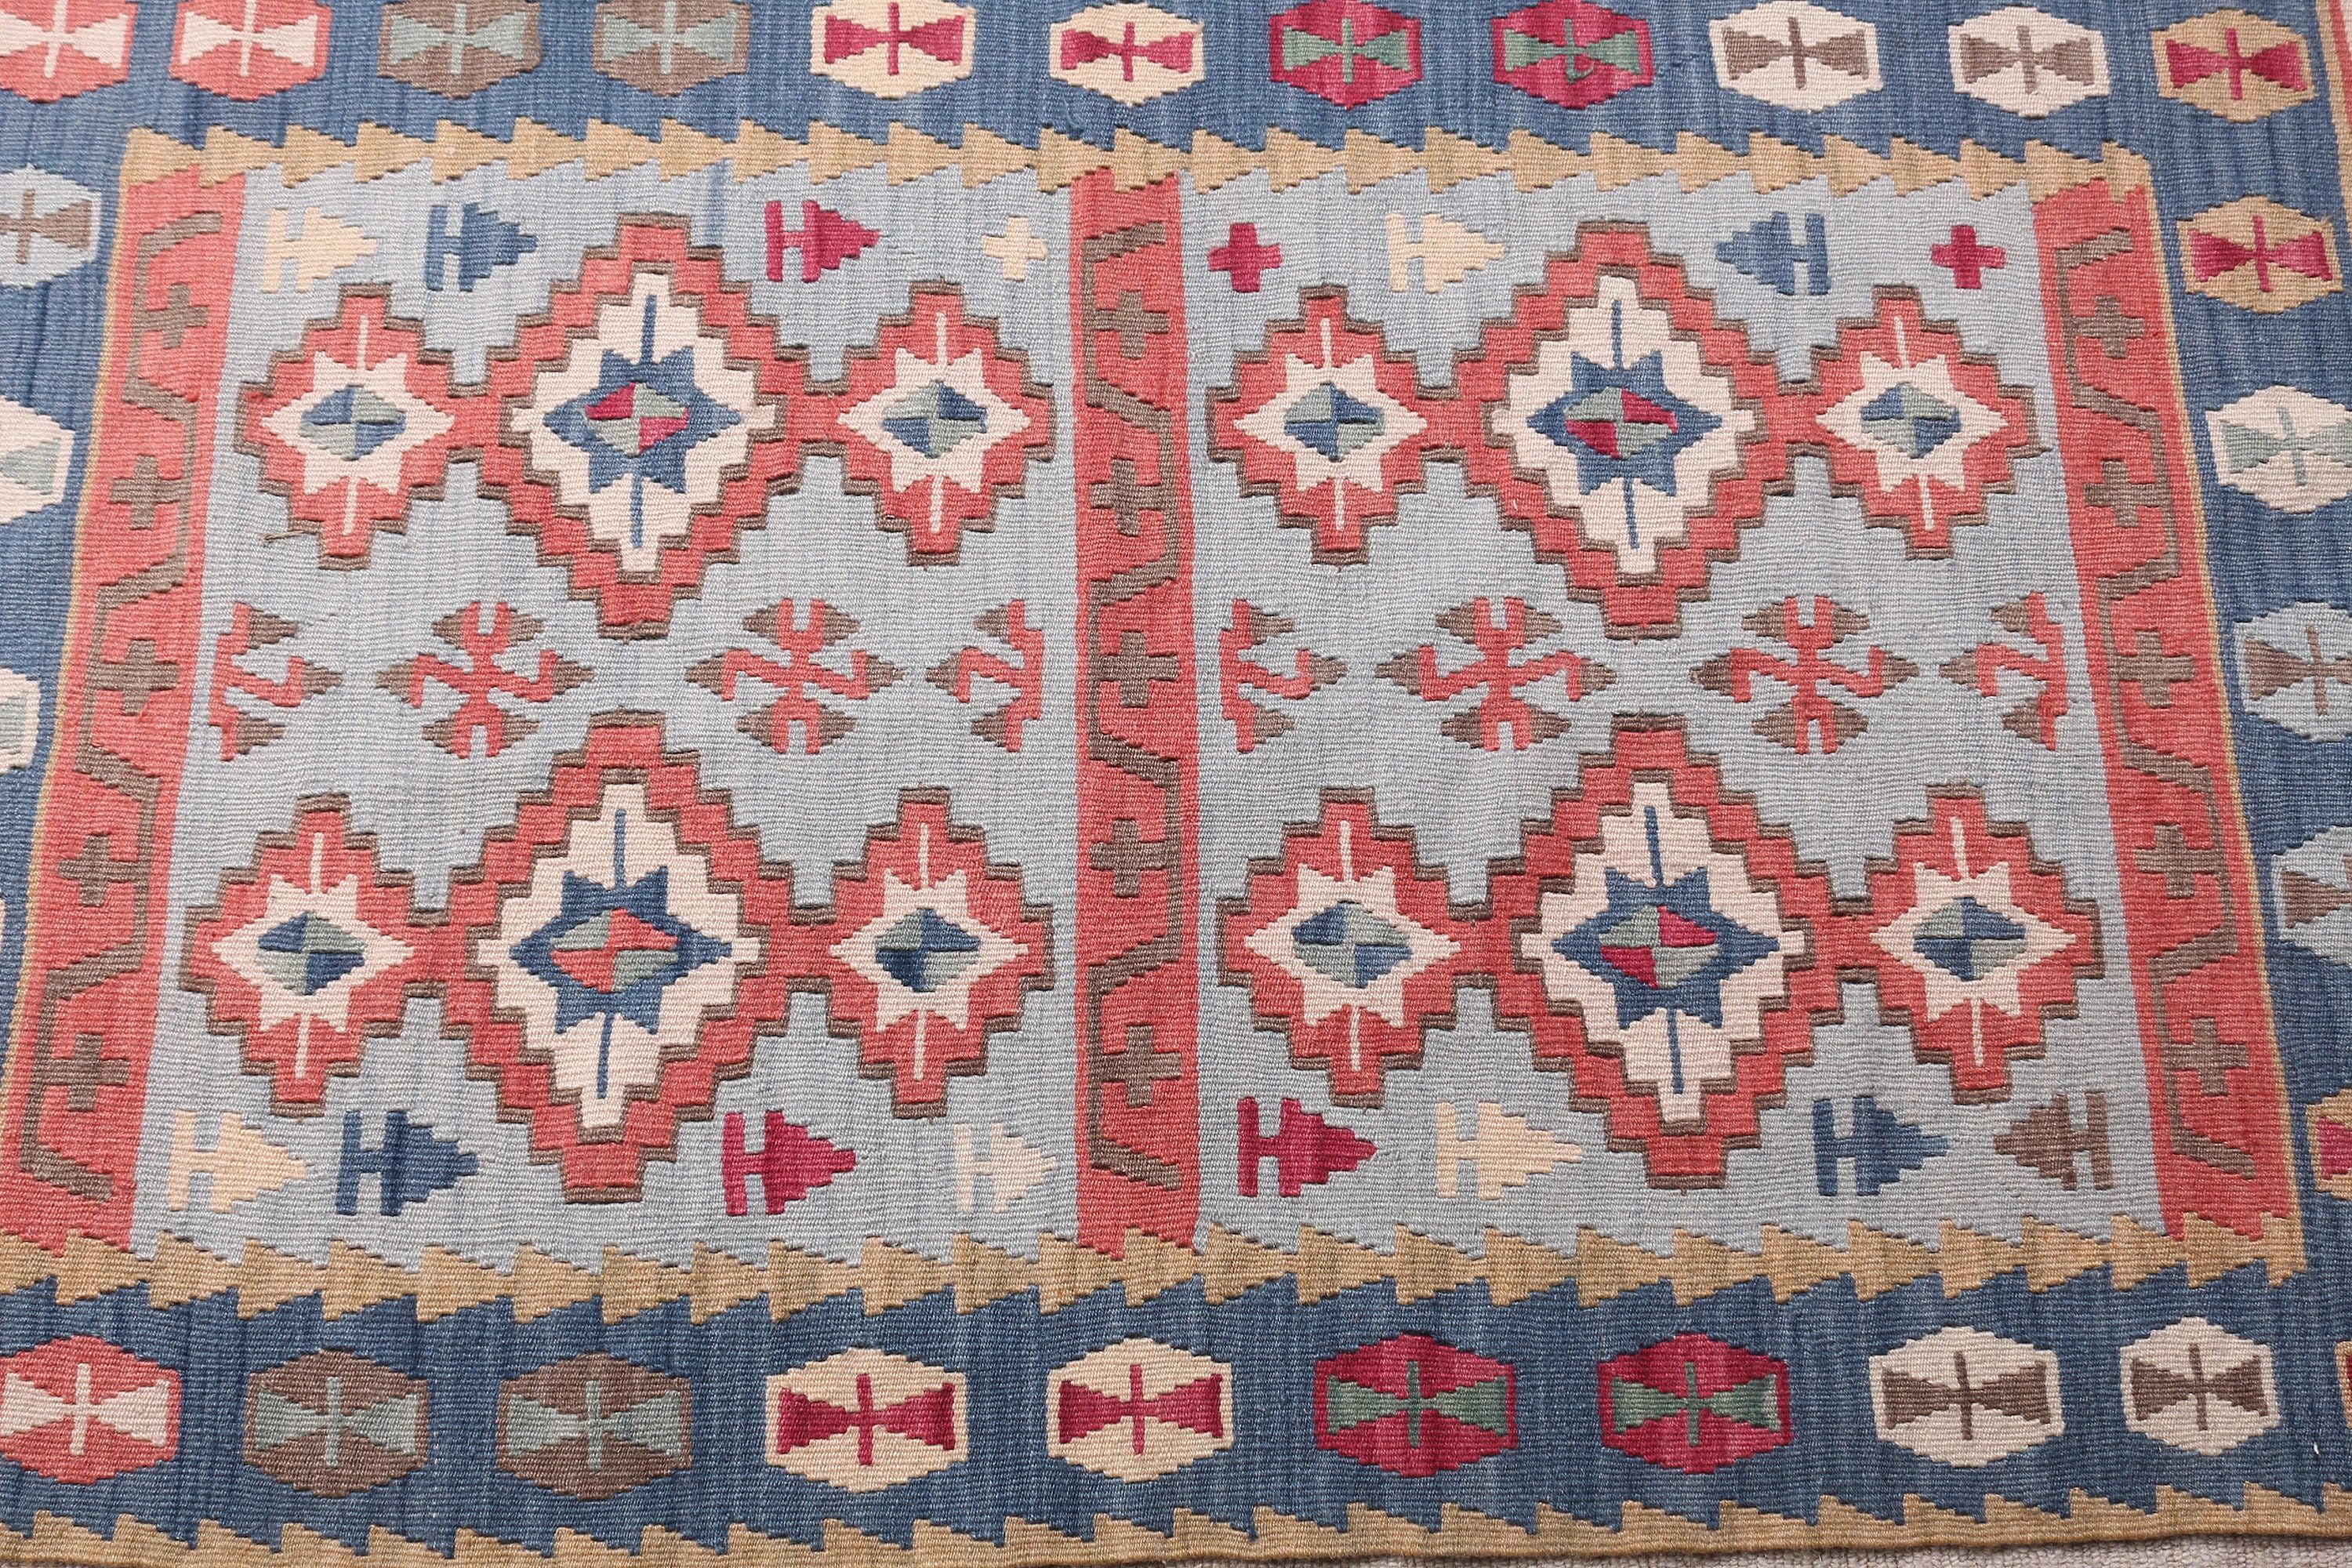 Kilim, Door Mat Rugs, Vintage Rug, Turkish Rugs, Ethnic Rug, Blue  2.7x4.2 ft Small Rug, Anatolian Rug, Car Mat Rug, Floor Rug